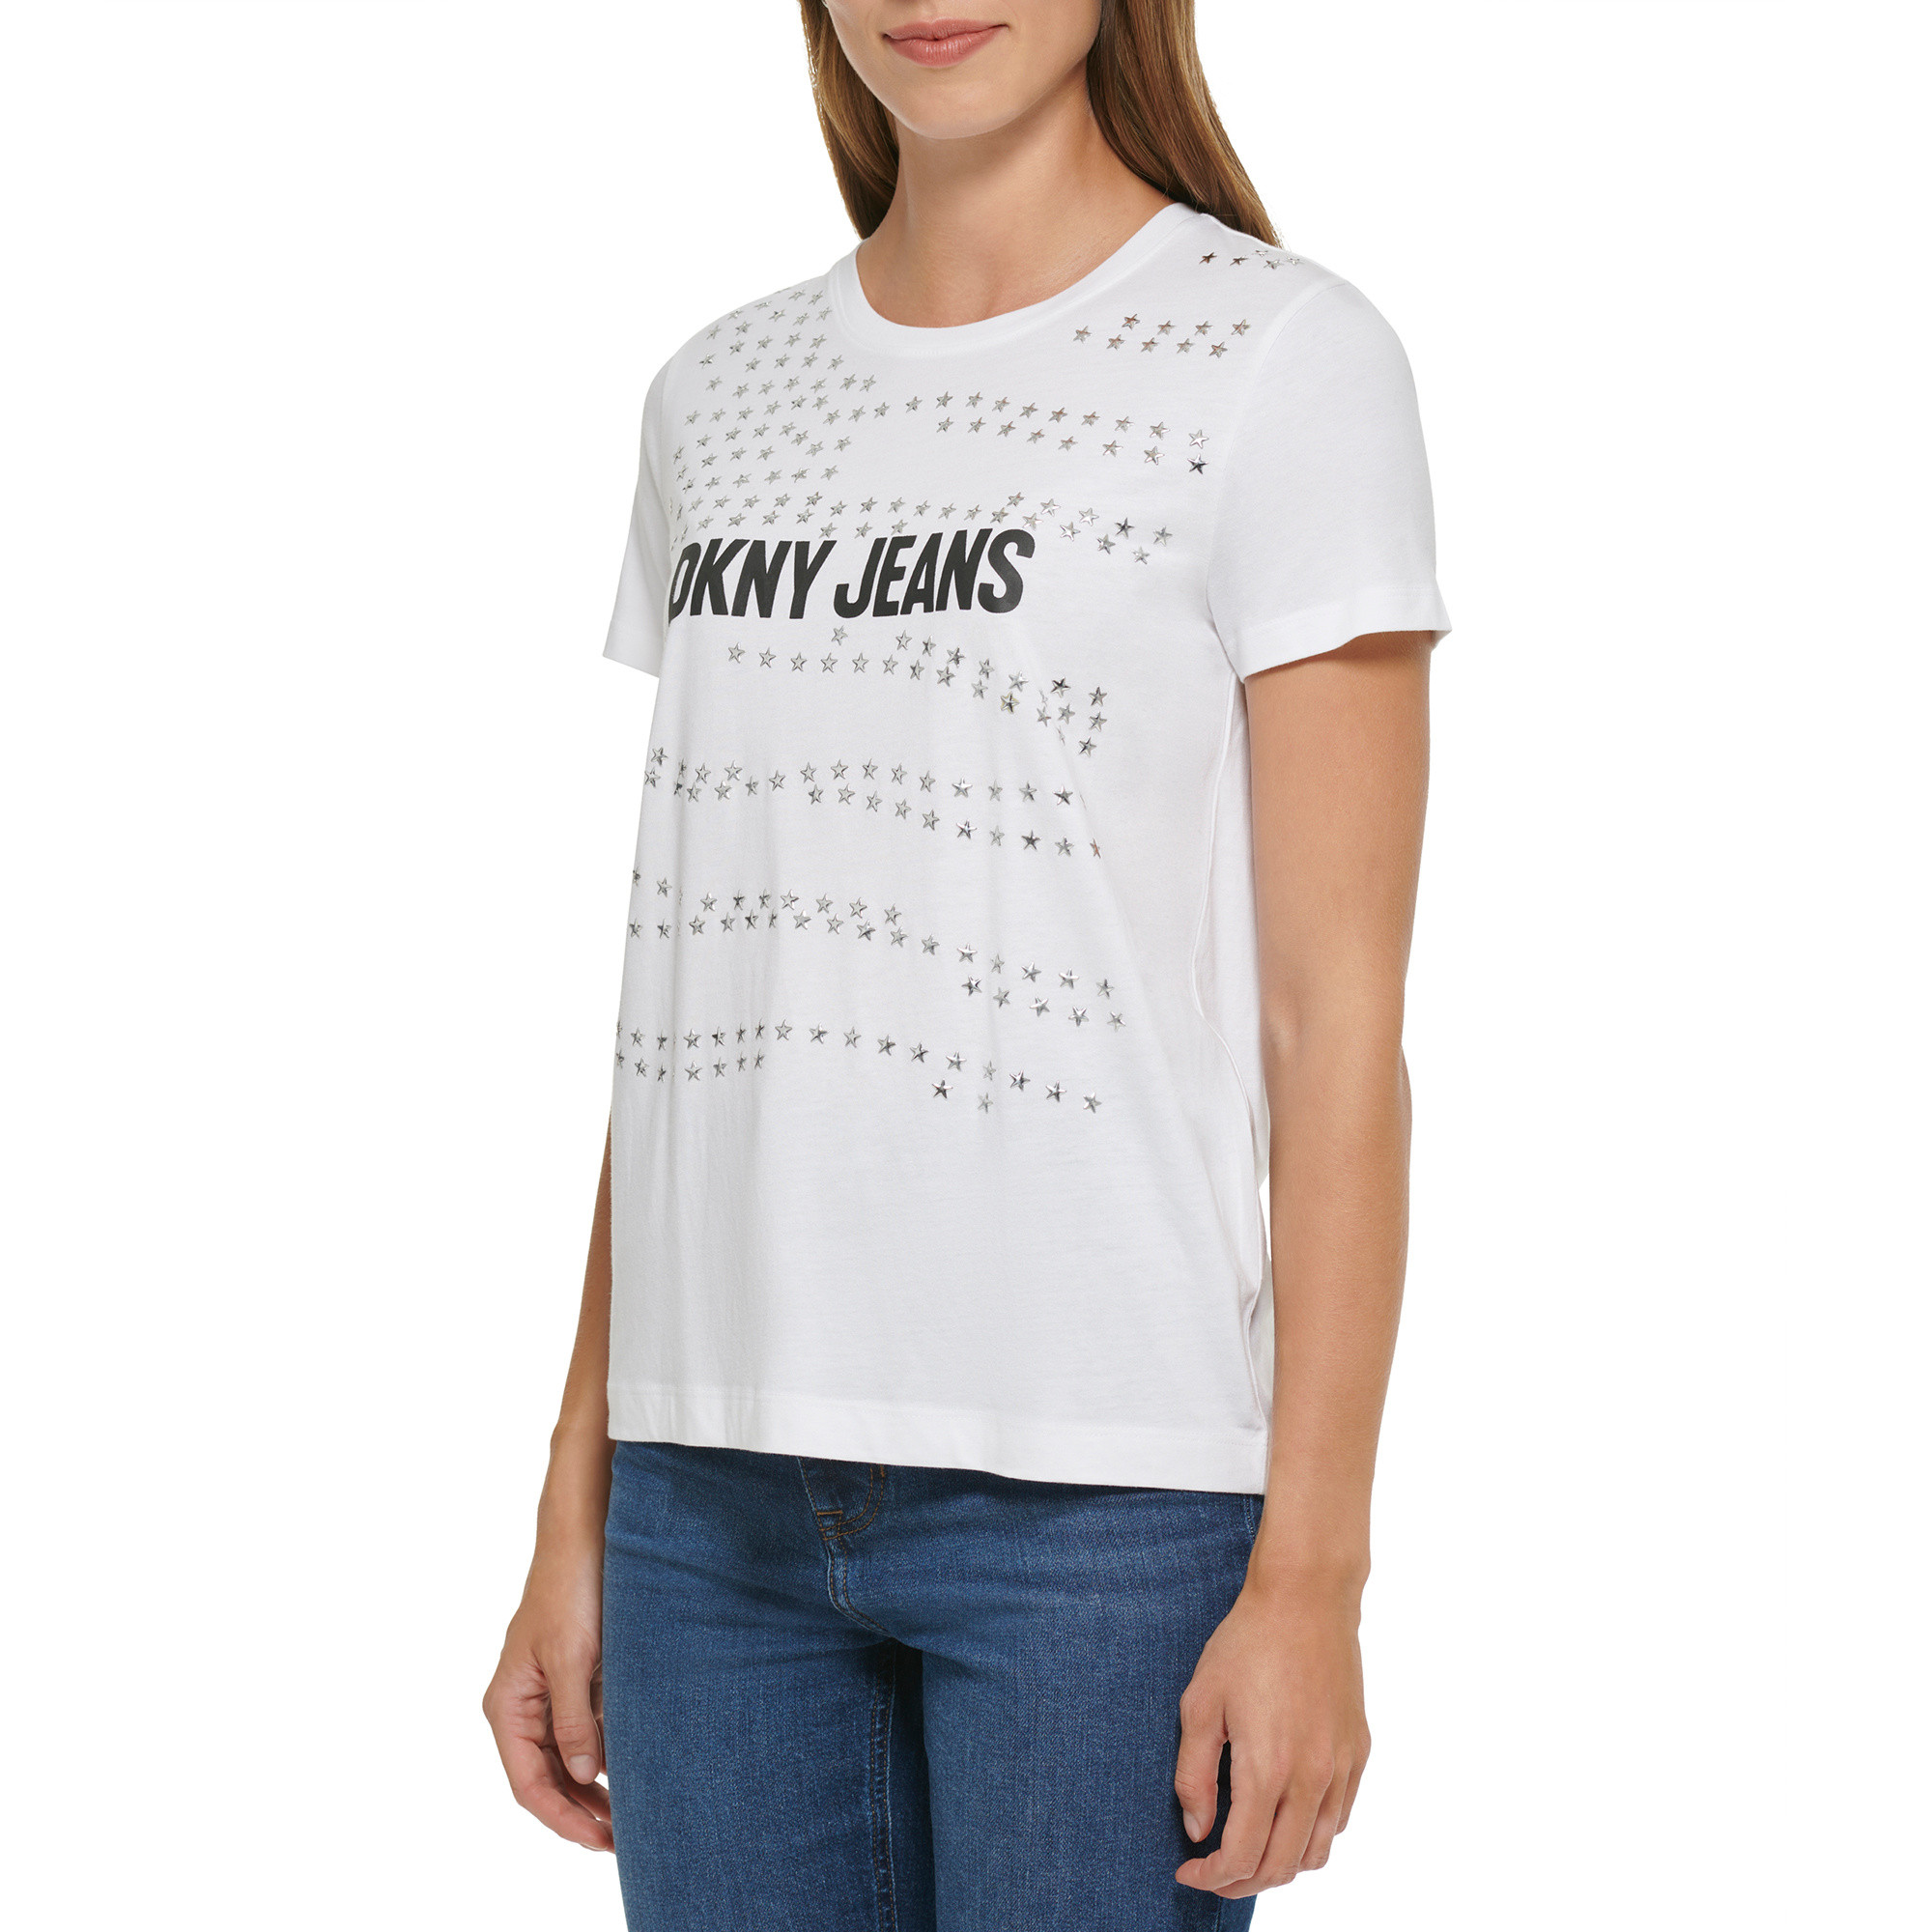 DKNY - Logo T-Shirt, White, large image number 4